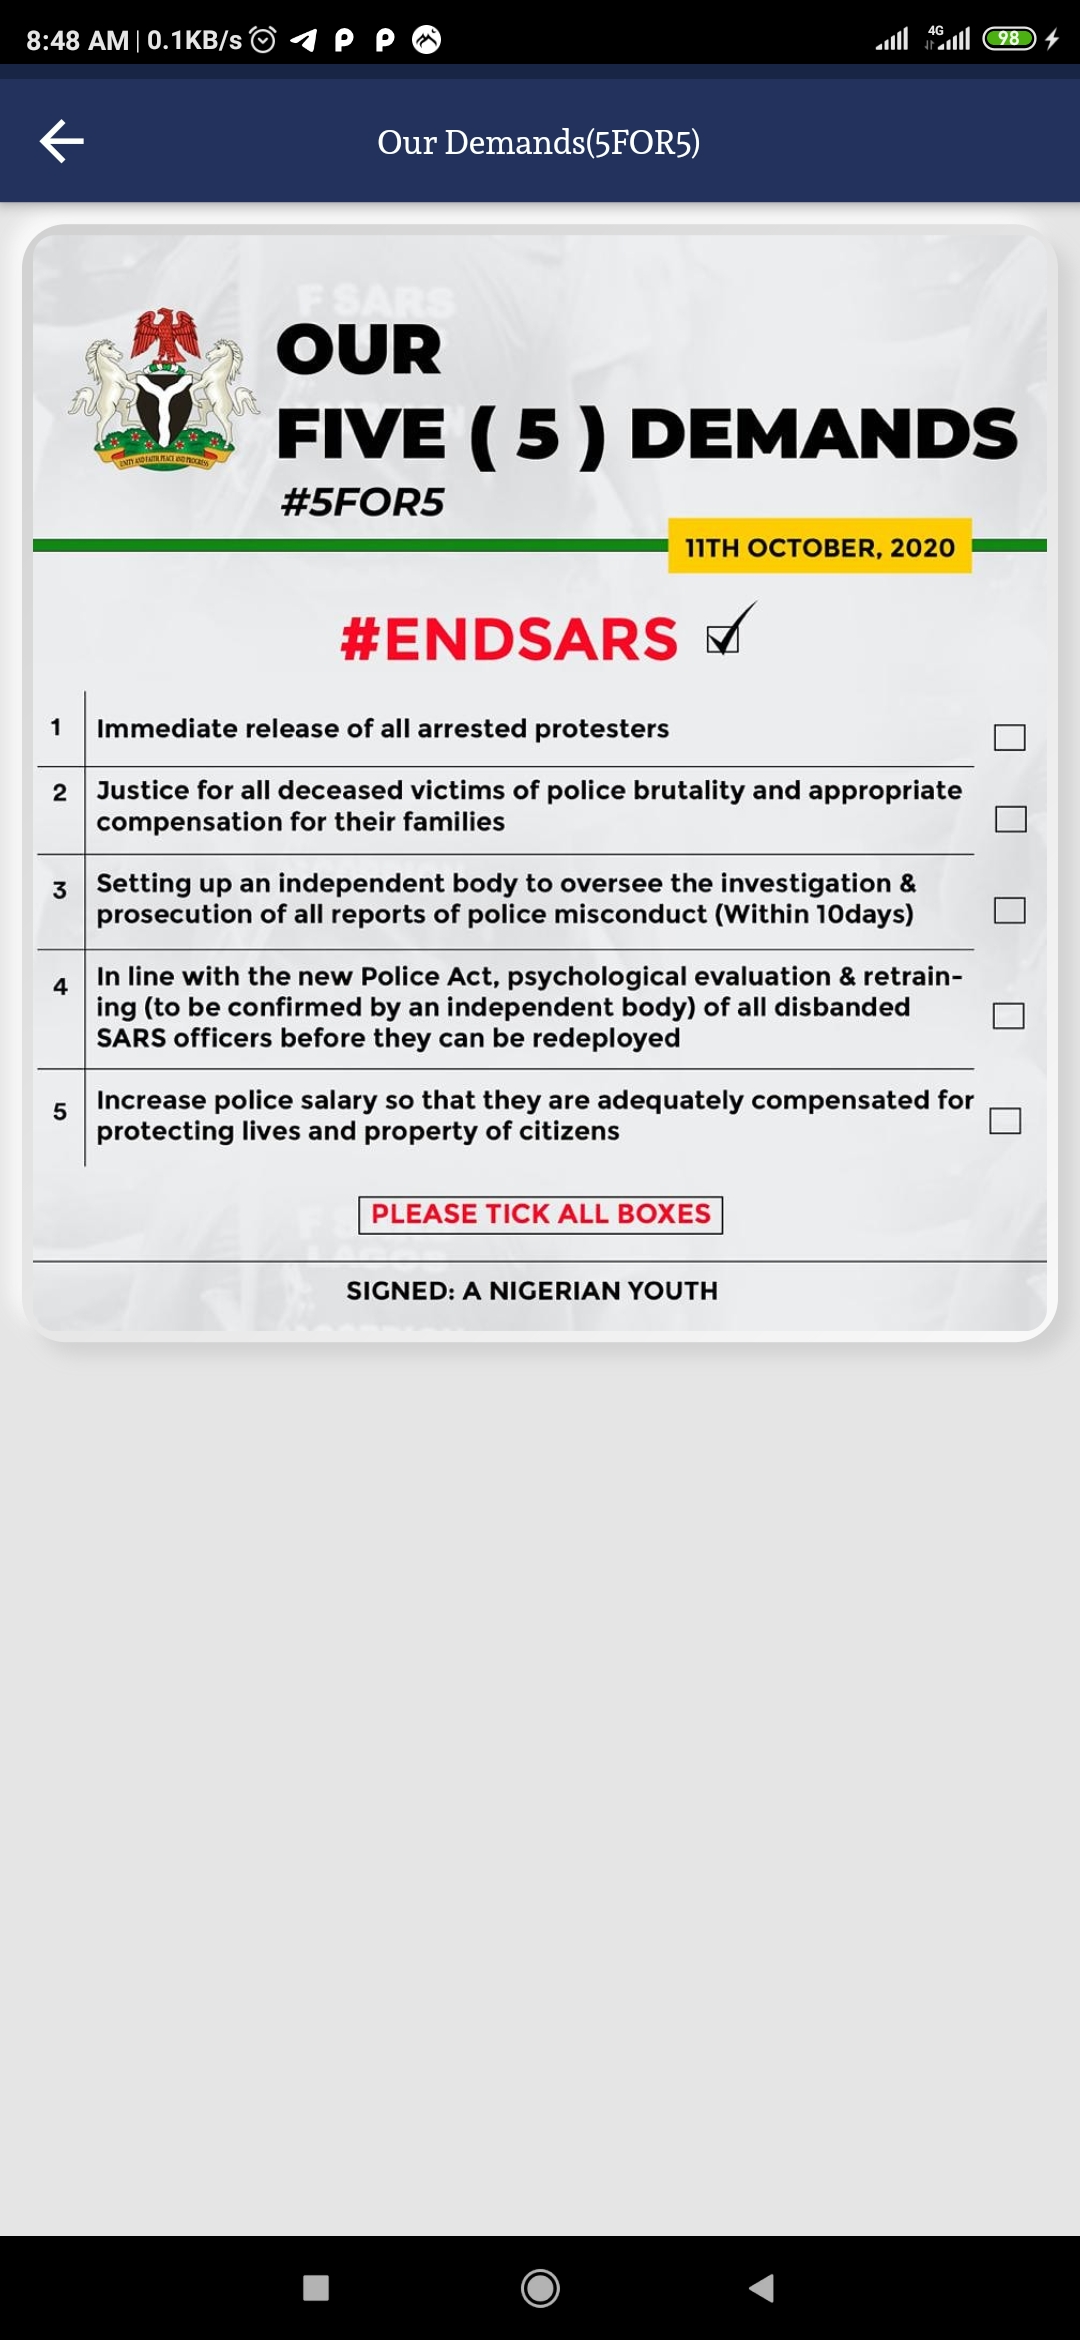 A Flutter App for EndSAR in Nigeria